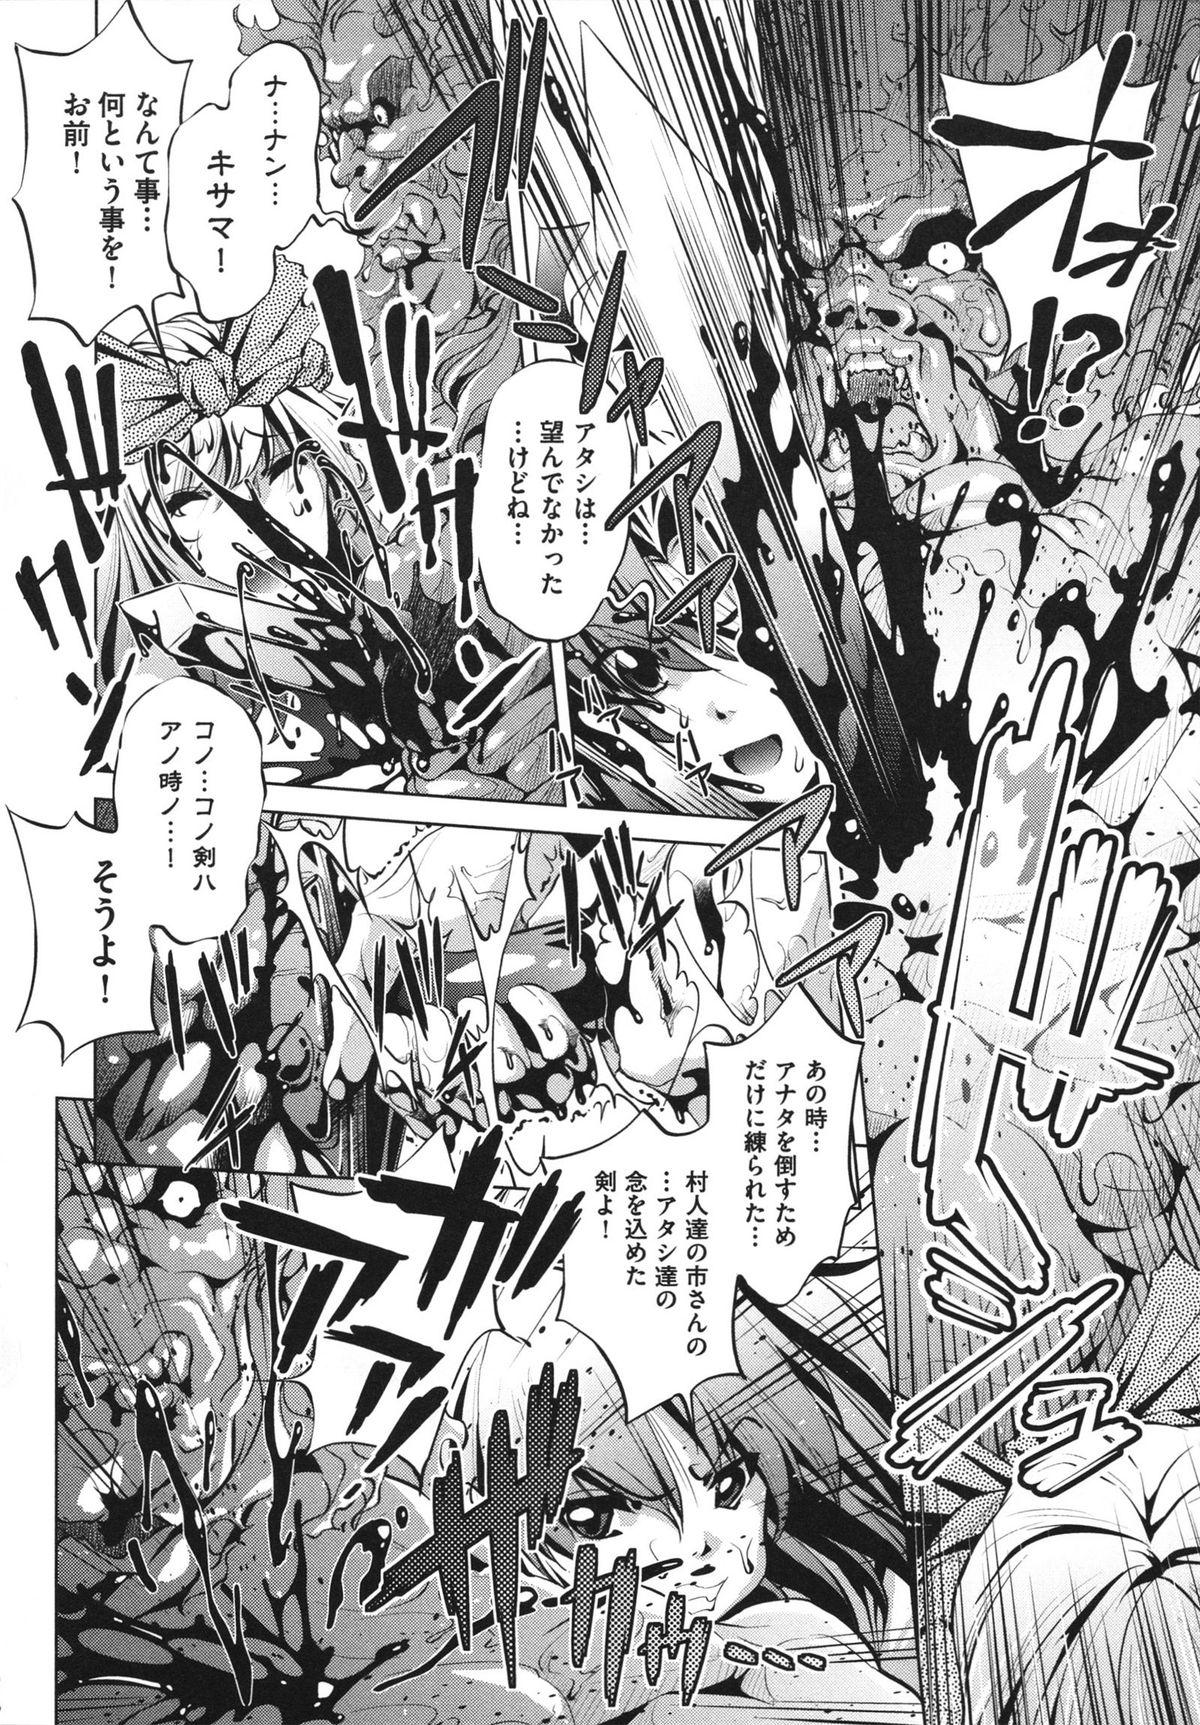 [Ootori Ryuuji] Shokushu wa Yawarakana Chibusa ni Makitsuki Onna-tachi no Ana wo Kakimidasu - Feeler coils around a soft breast and violates women's hole. 195